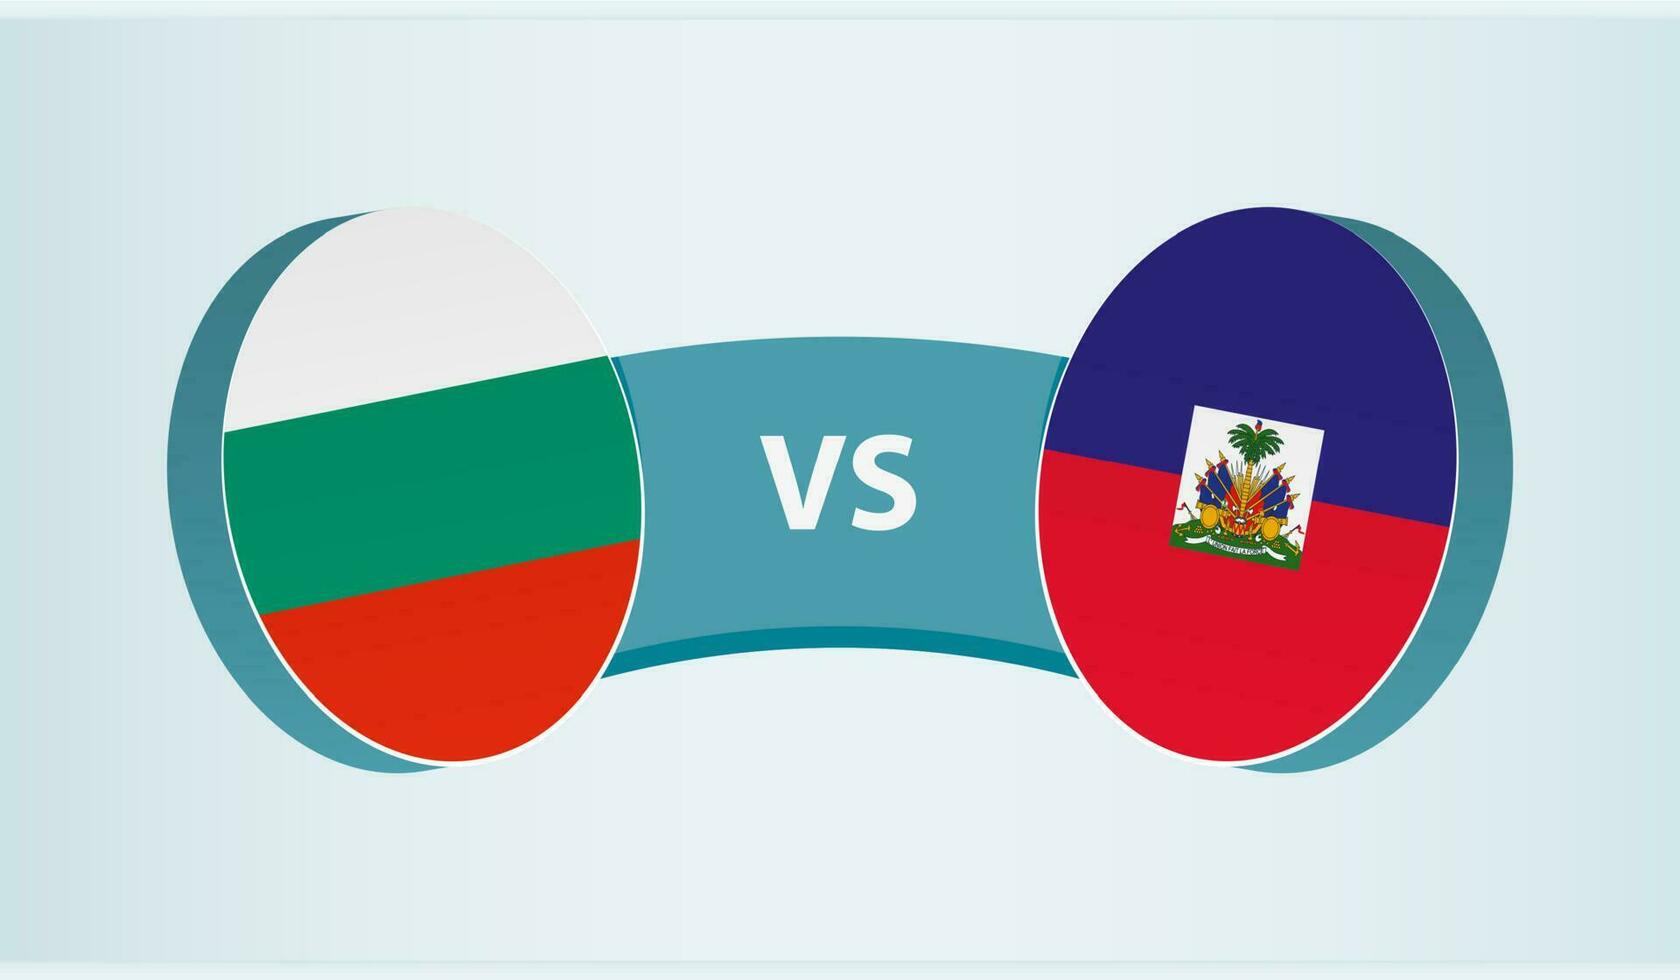 Bulgaria versus Haiti, team sports competition concept. vector